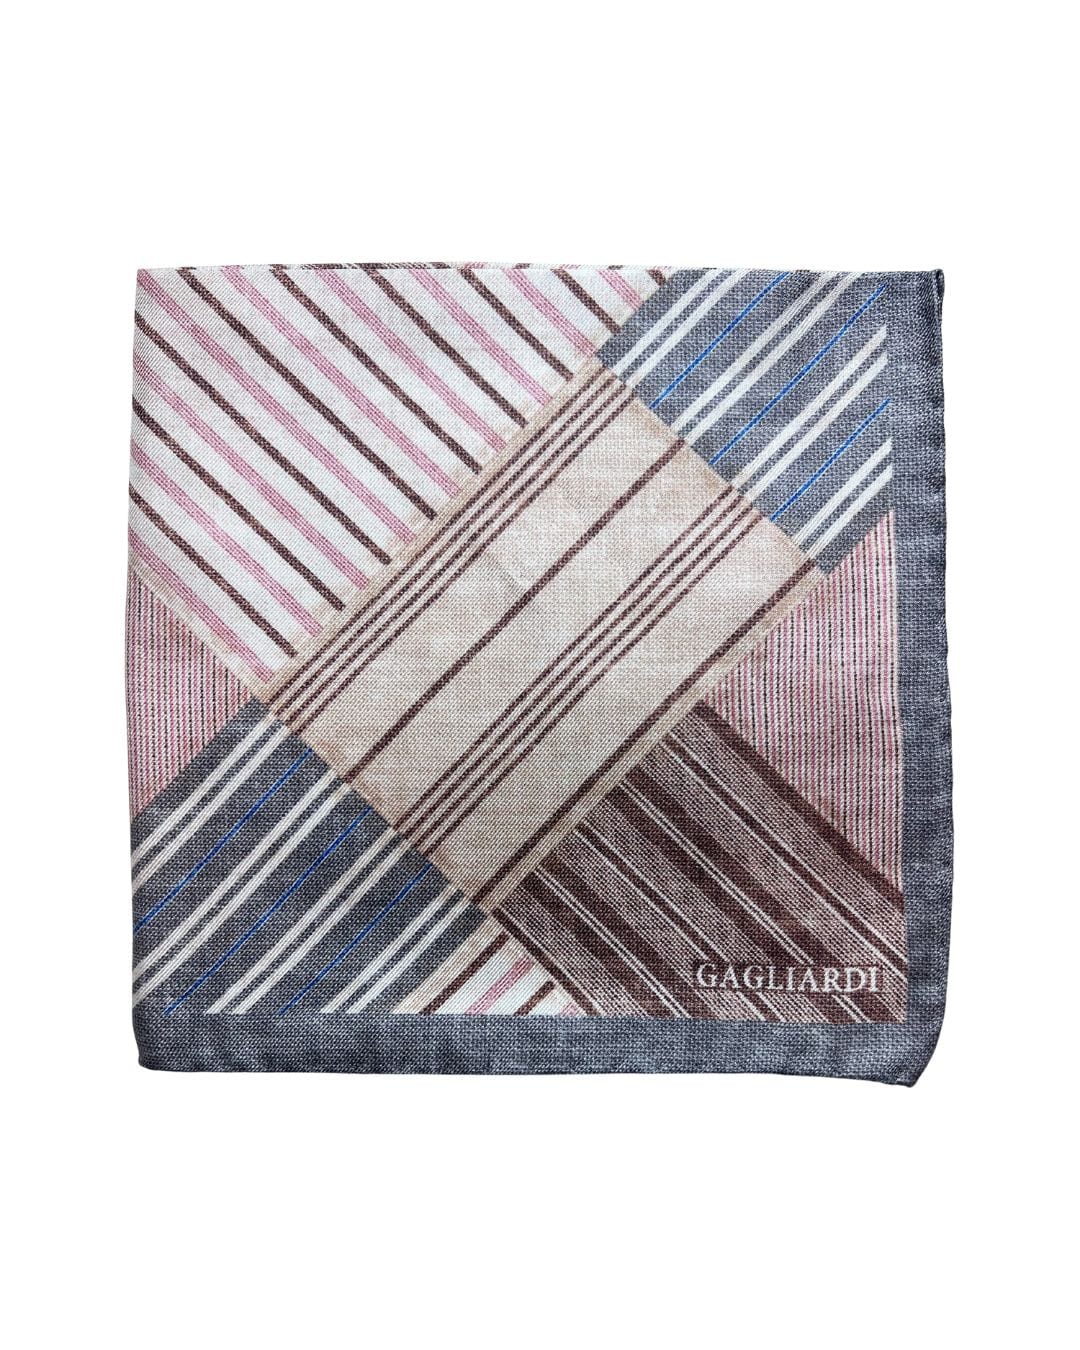 Gagliardi Pocket Squares ONE SIZE Gagliardi Grey Striped Italian Silk Pocket Square